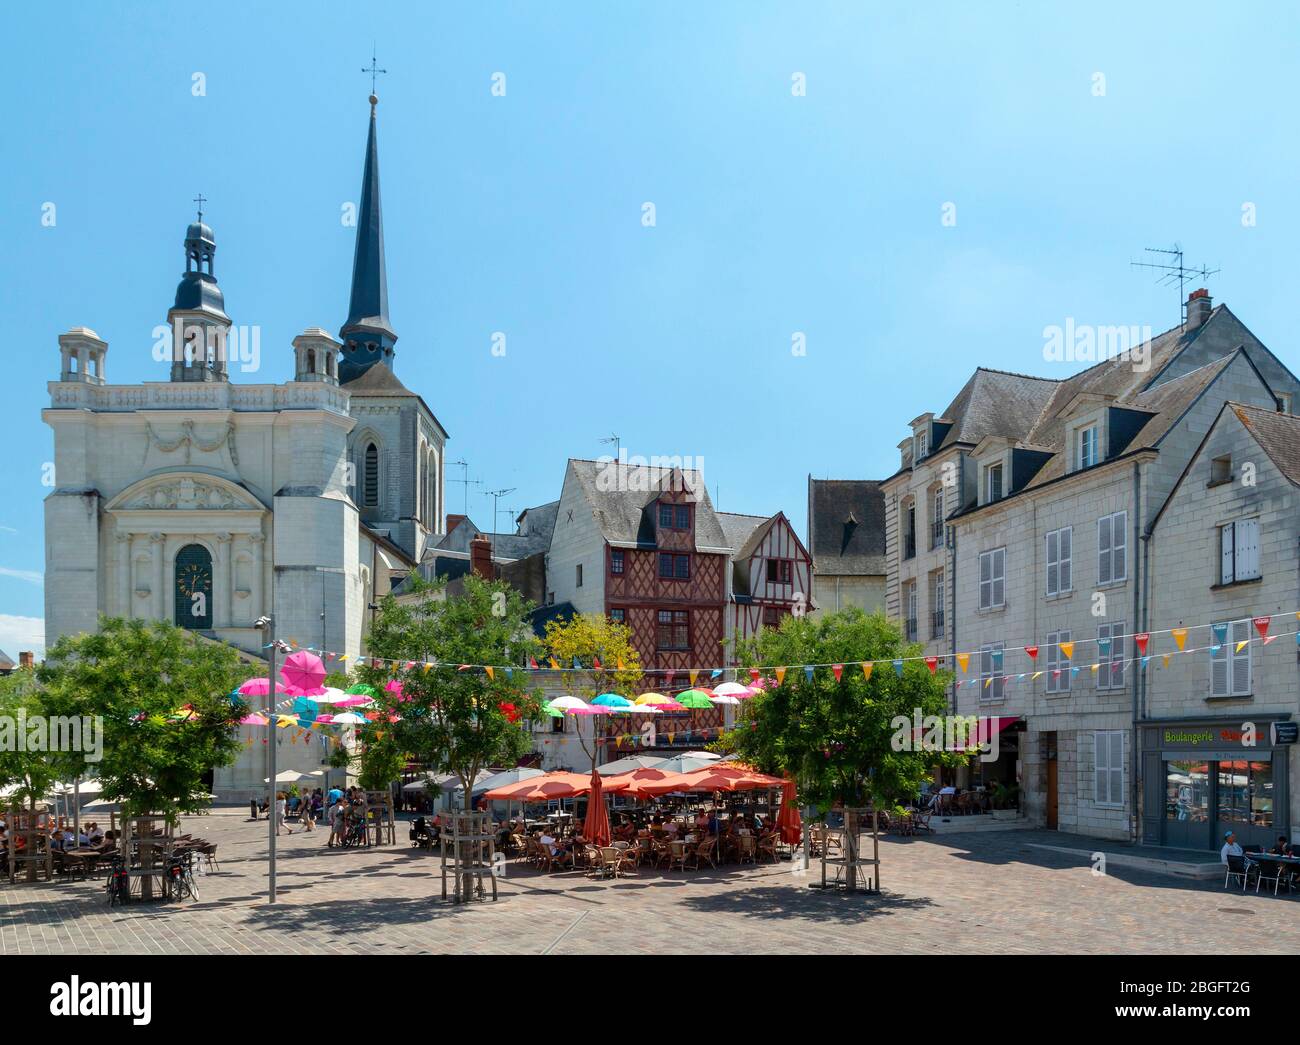 Saumur, Pays de la Loire, Francia - 1 luglio 2018: Vivace piazza Place Saint-Pierre a Saumur con persone che cenano presso le aree di posti a sedere ristorante all'aperto Foto Stock